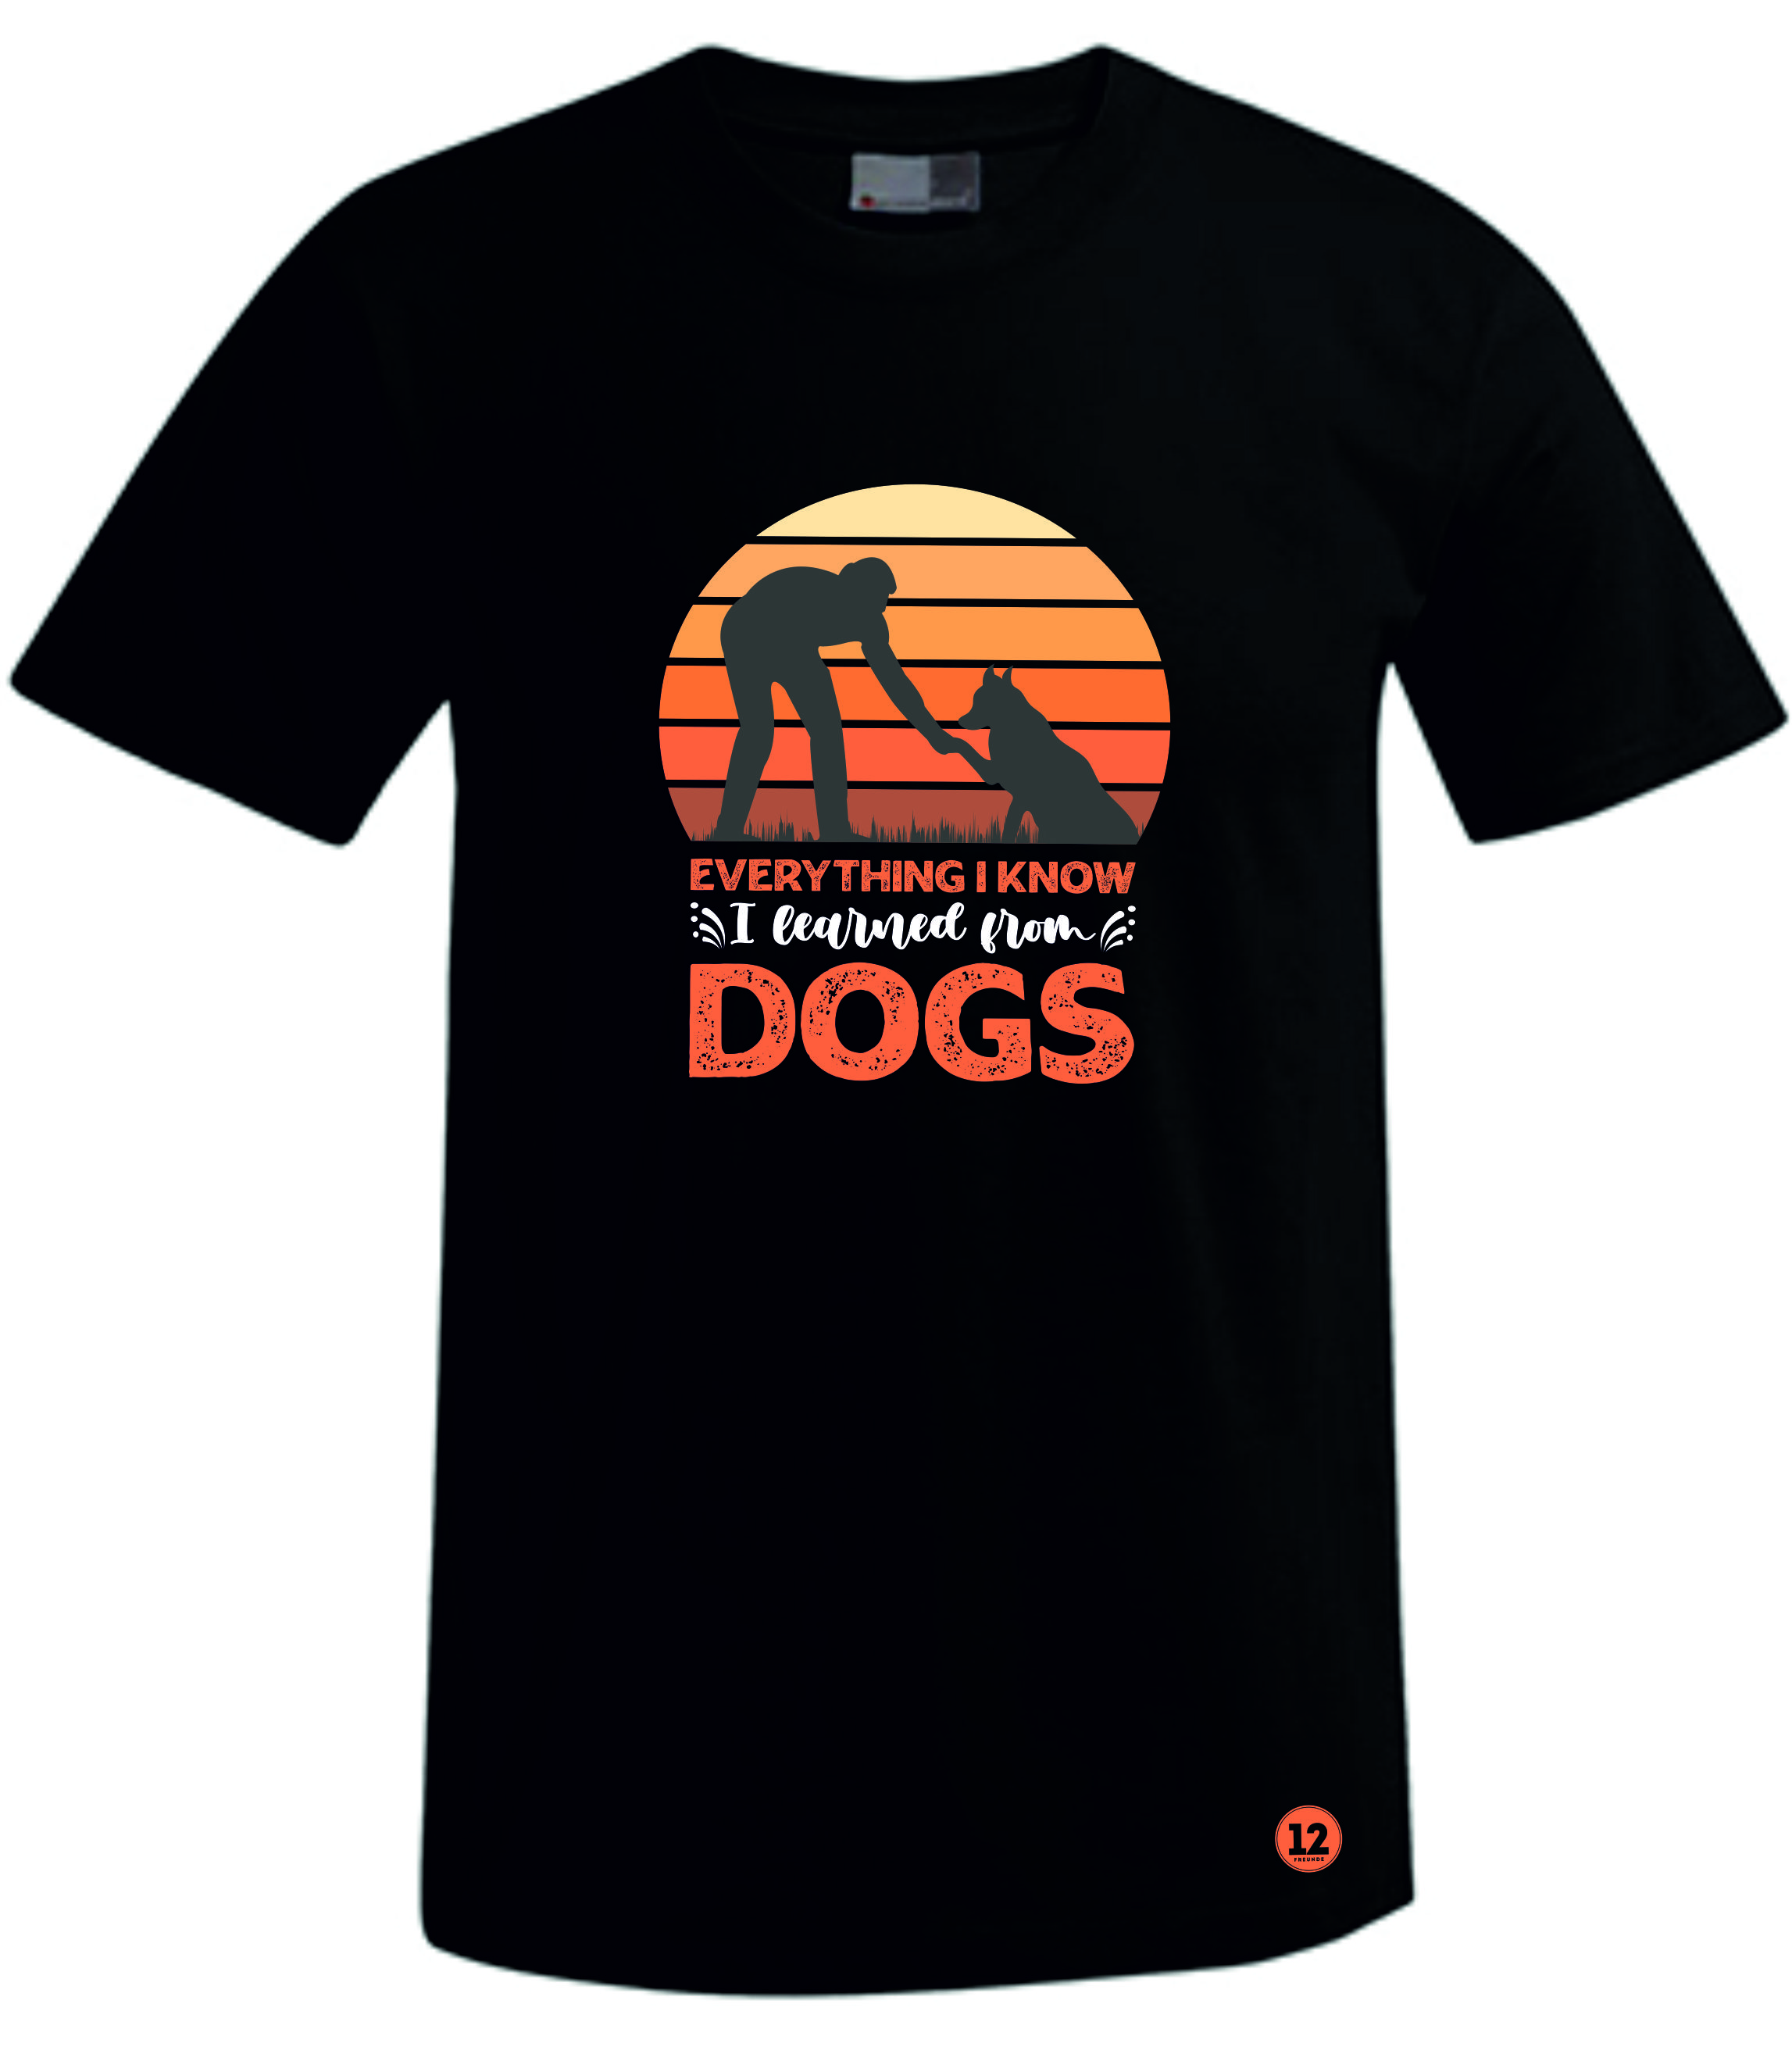 Dogs T-Shirt HERREN/KINDER Premium 